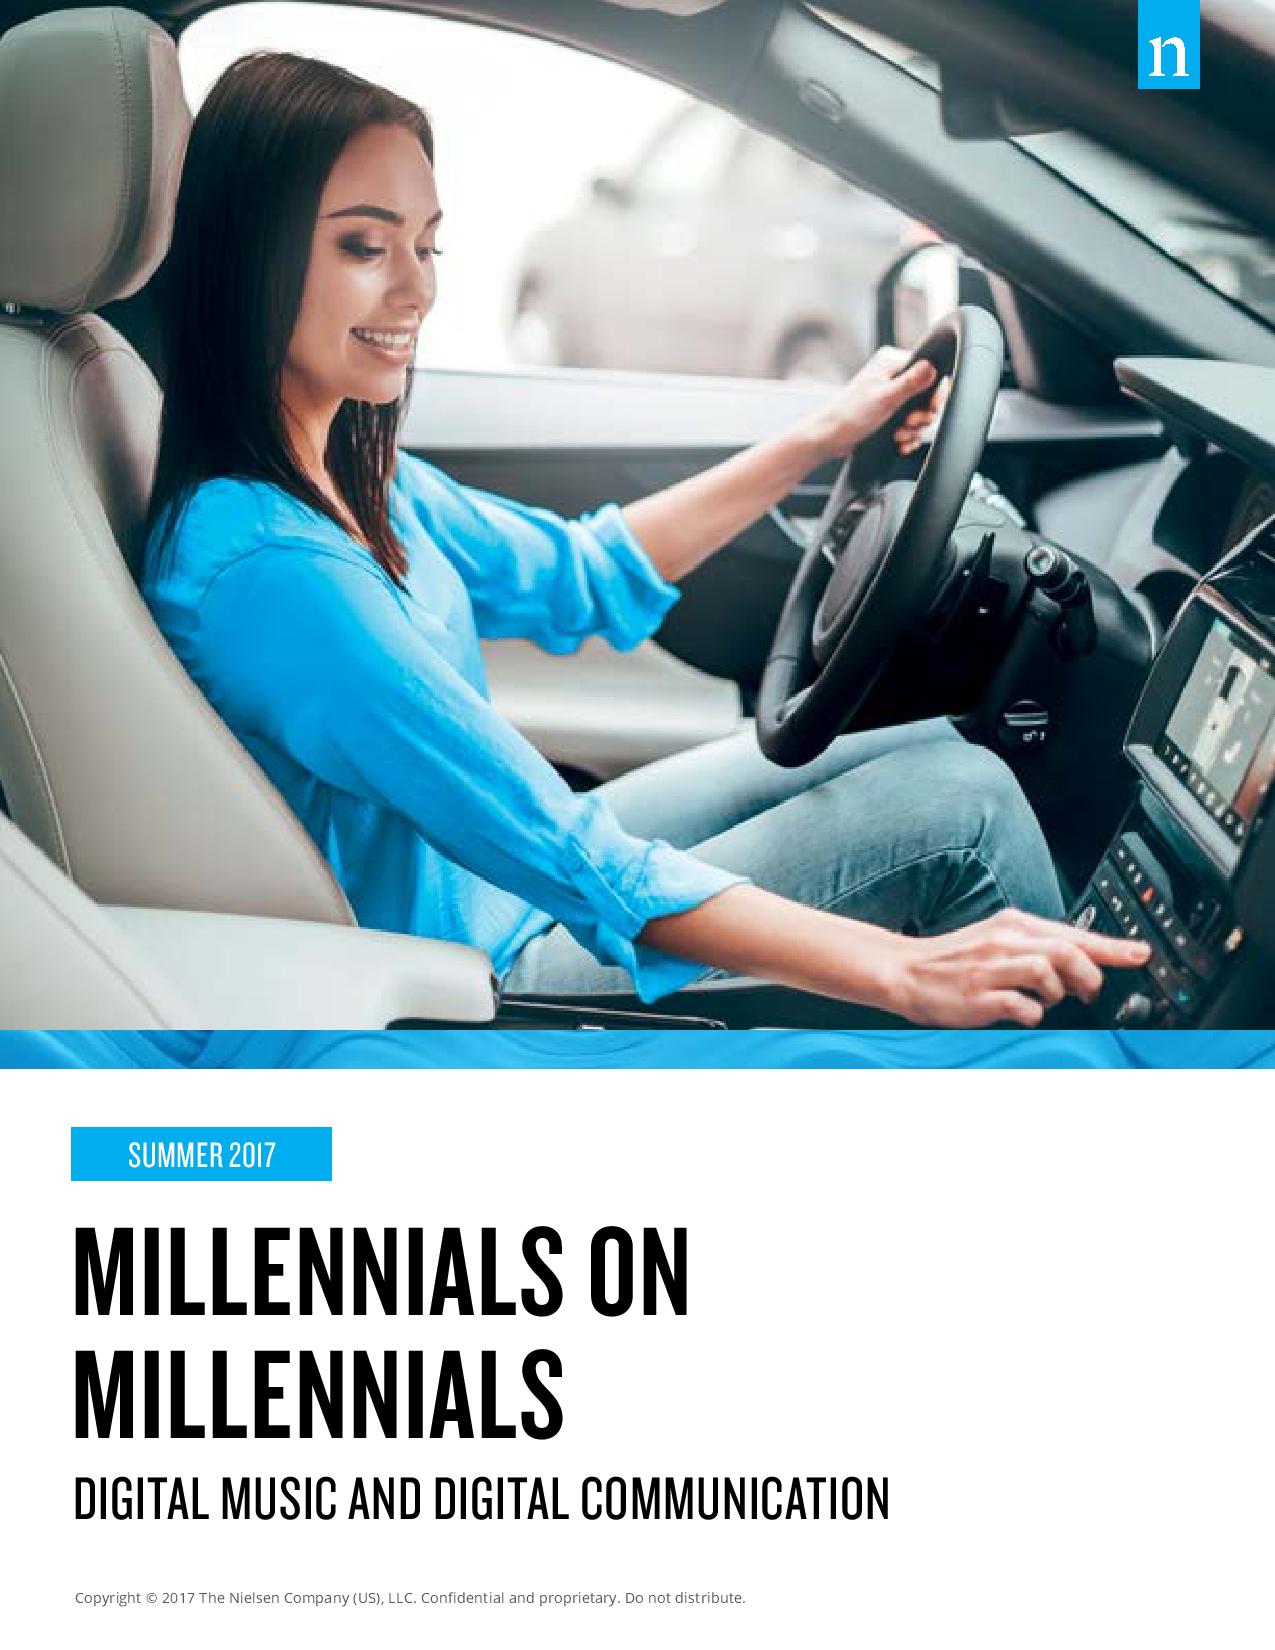 millennials-on-millennials-report-aug-2017-page-001